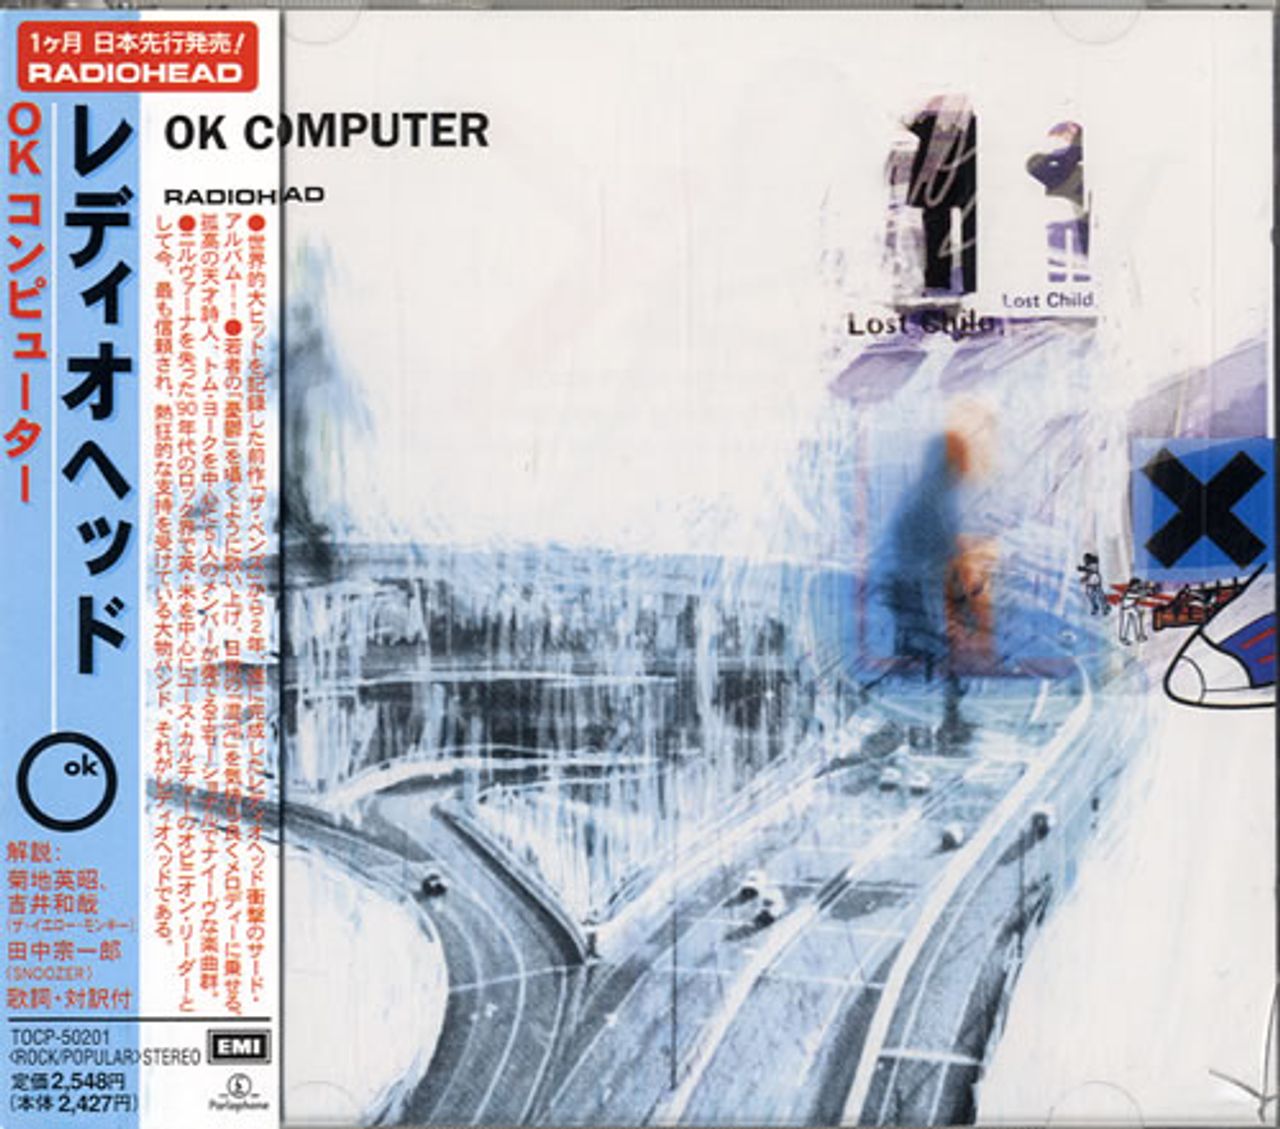 Radiohead Ok Computer Japanese CD album — RareVinyl.com